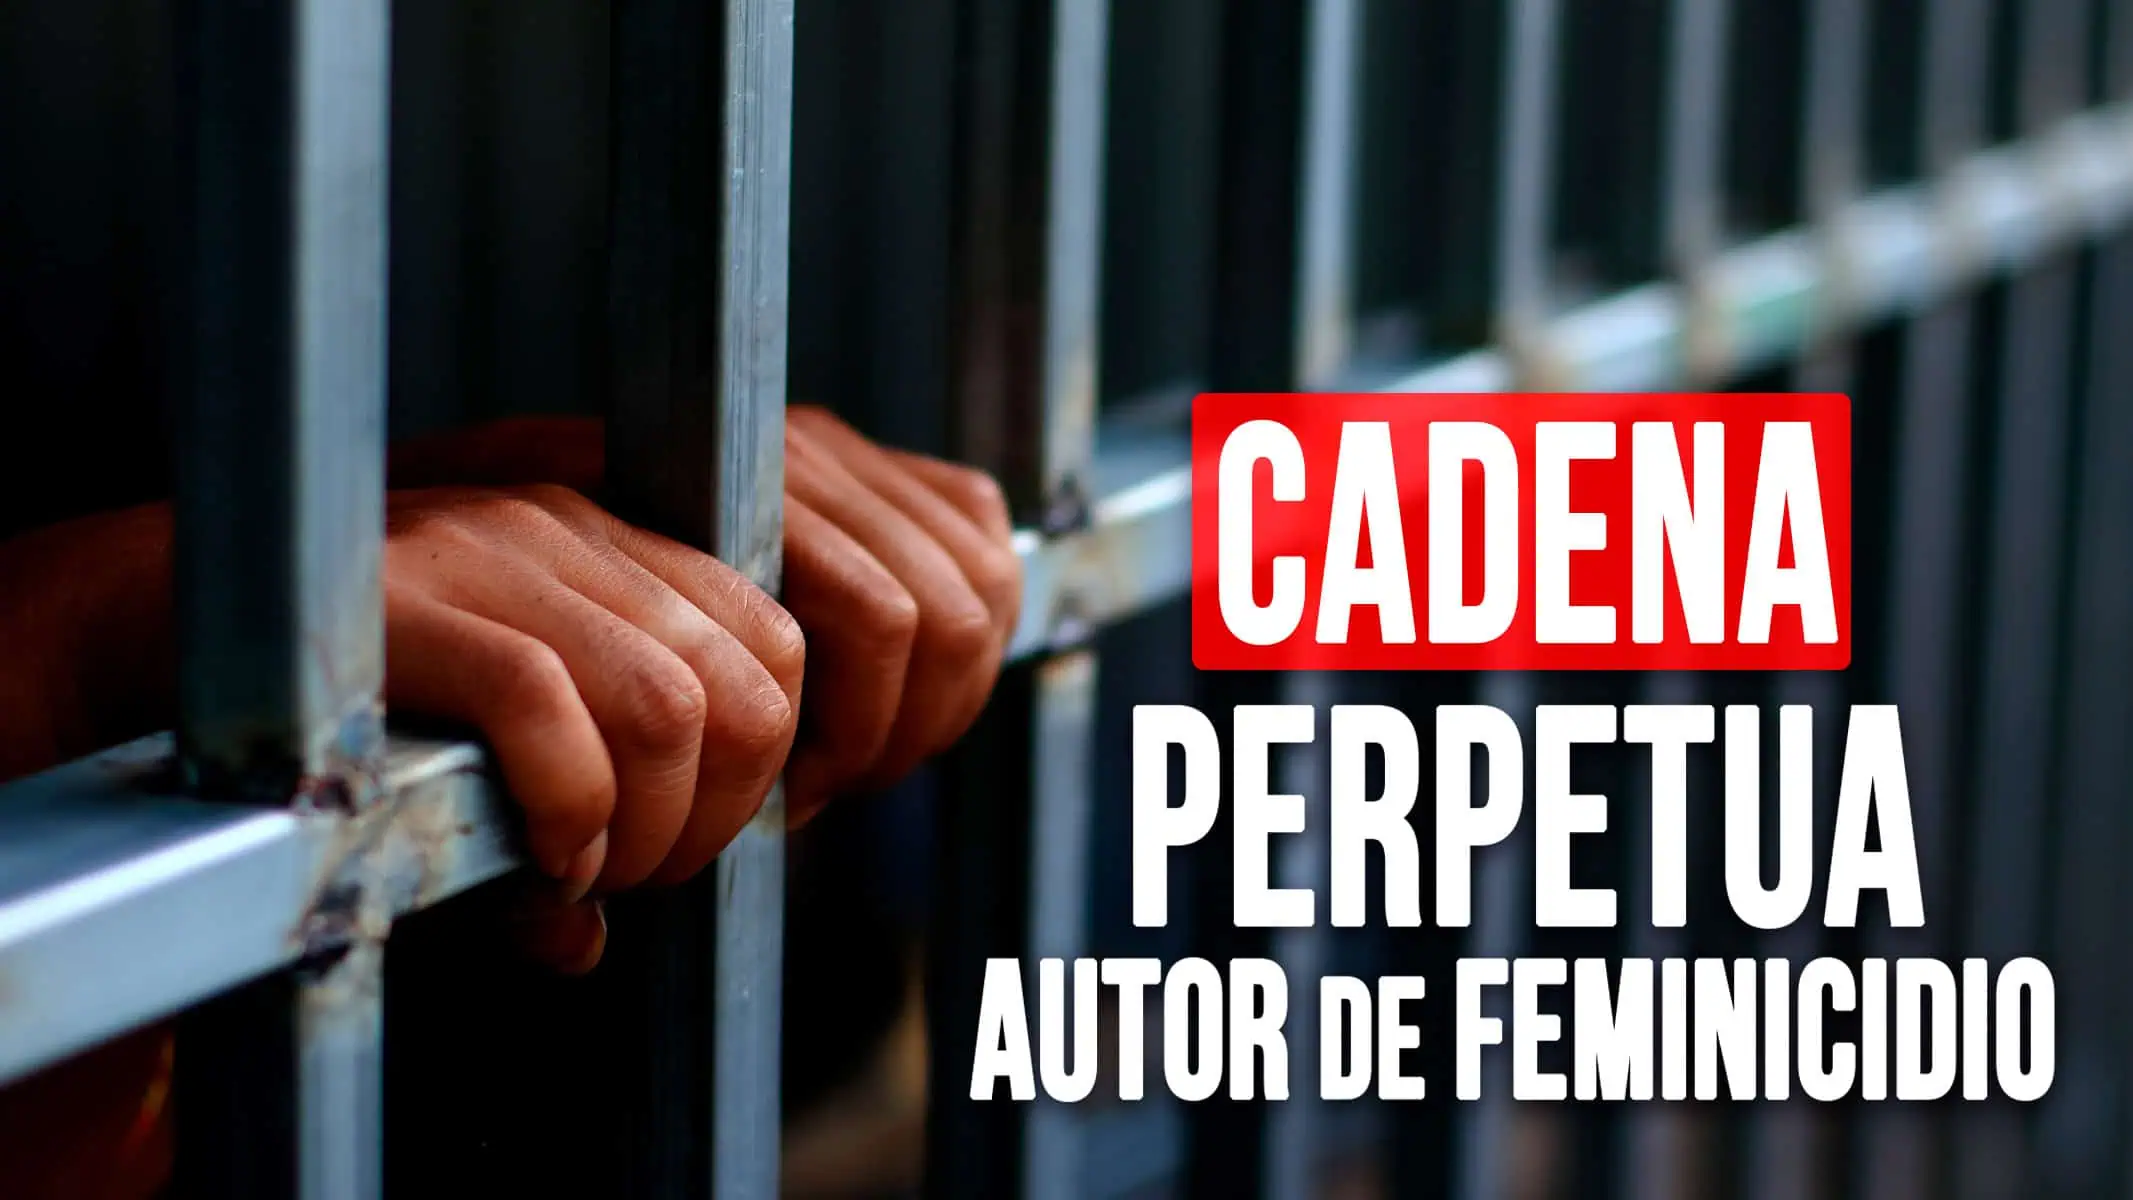 Condenan a Cadena Perpetua al Autor de un Feminicidio en Cuba: Mira los Detalles del Caso